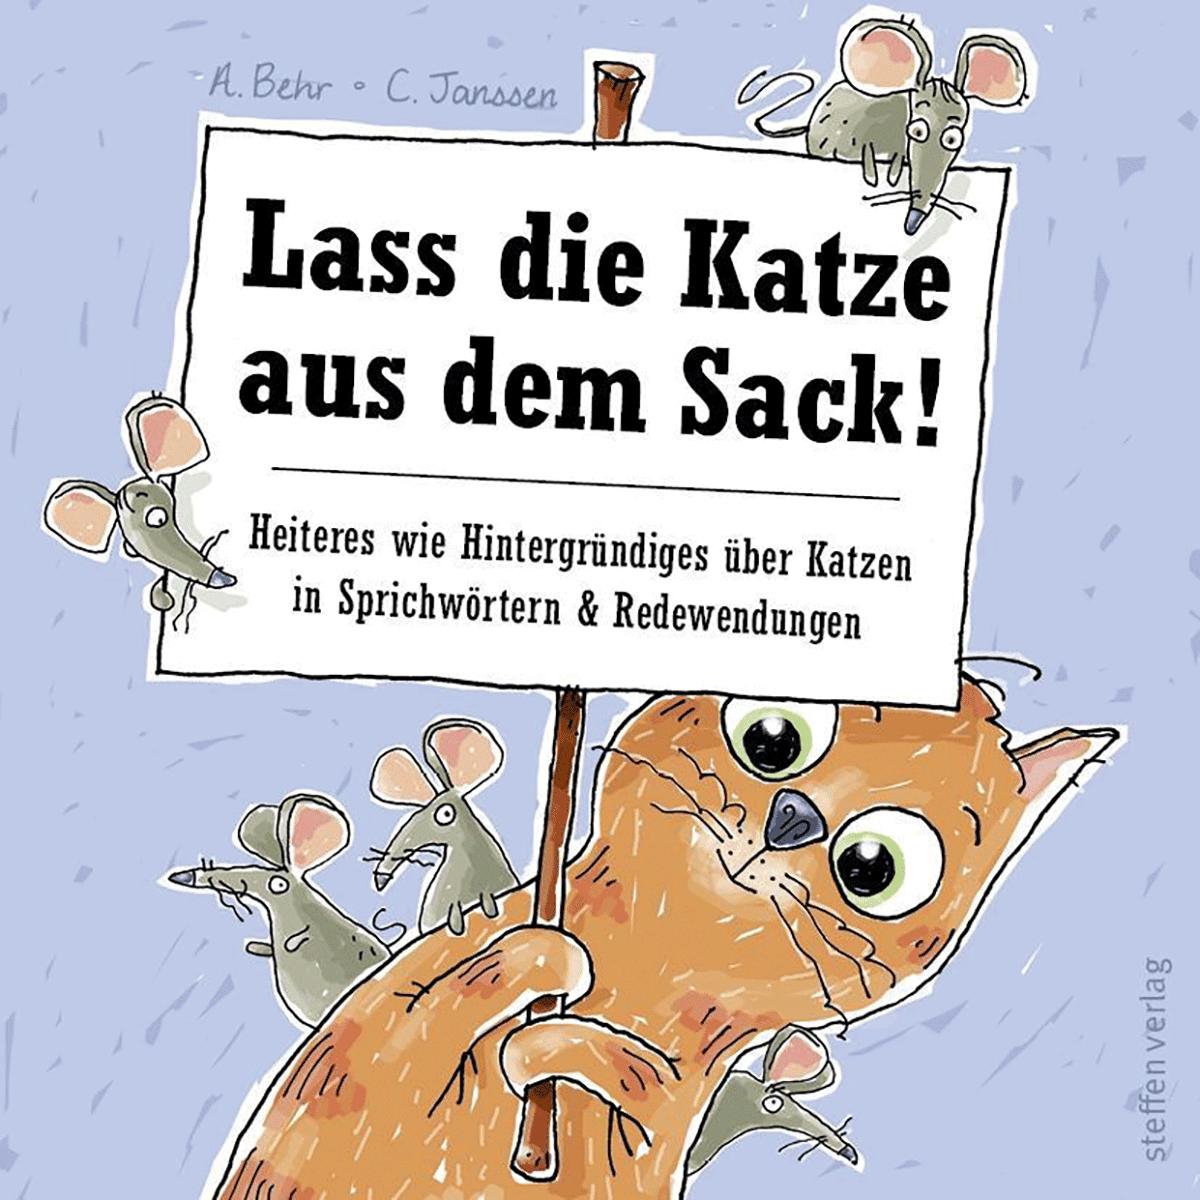 Lass die Katze aus dem Sack!: Heiteres wie Hintergründiges über Katzen in Sprichwörtern & Redewendungen - Annette Behr